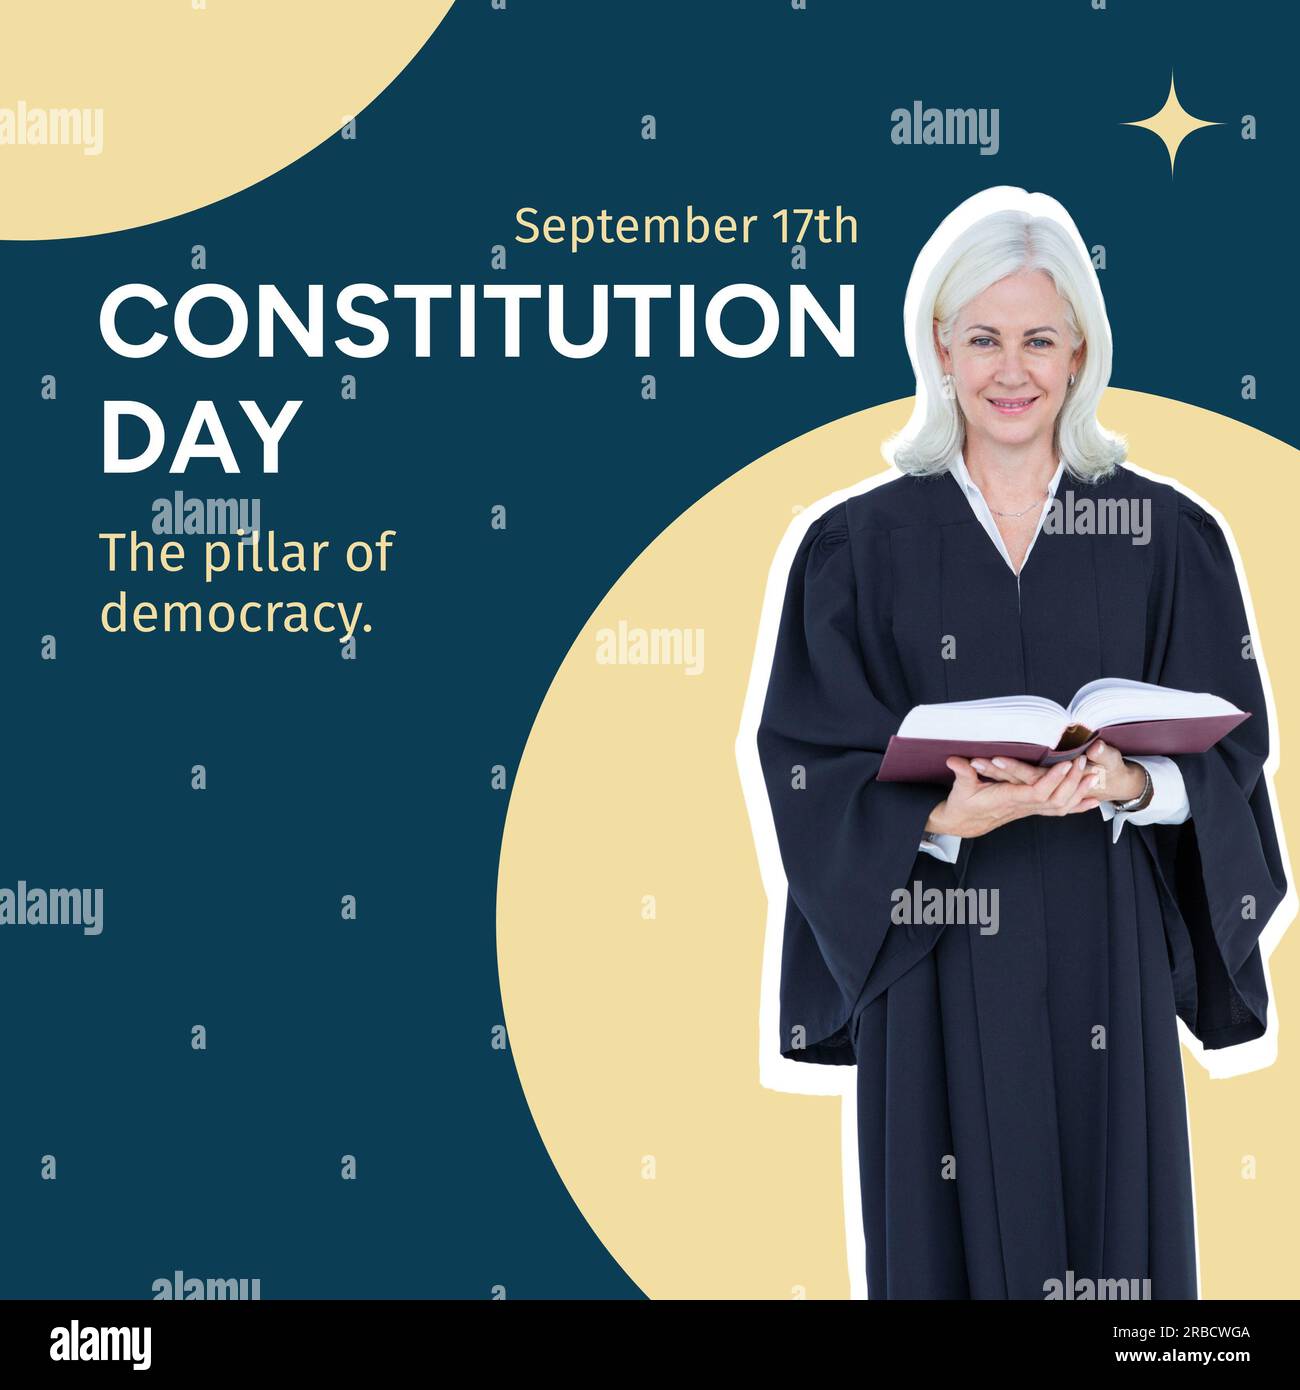 Texte du jour de la Constitution avec le souriant avocat caucasien senior sur fond bleu et crème Banque D'Images